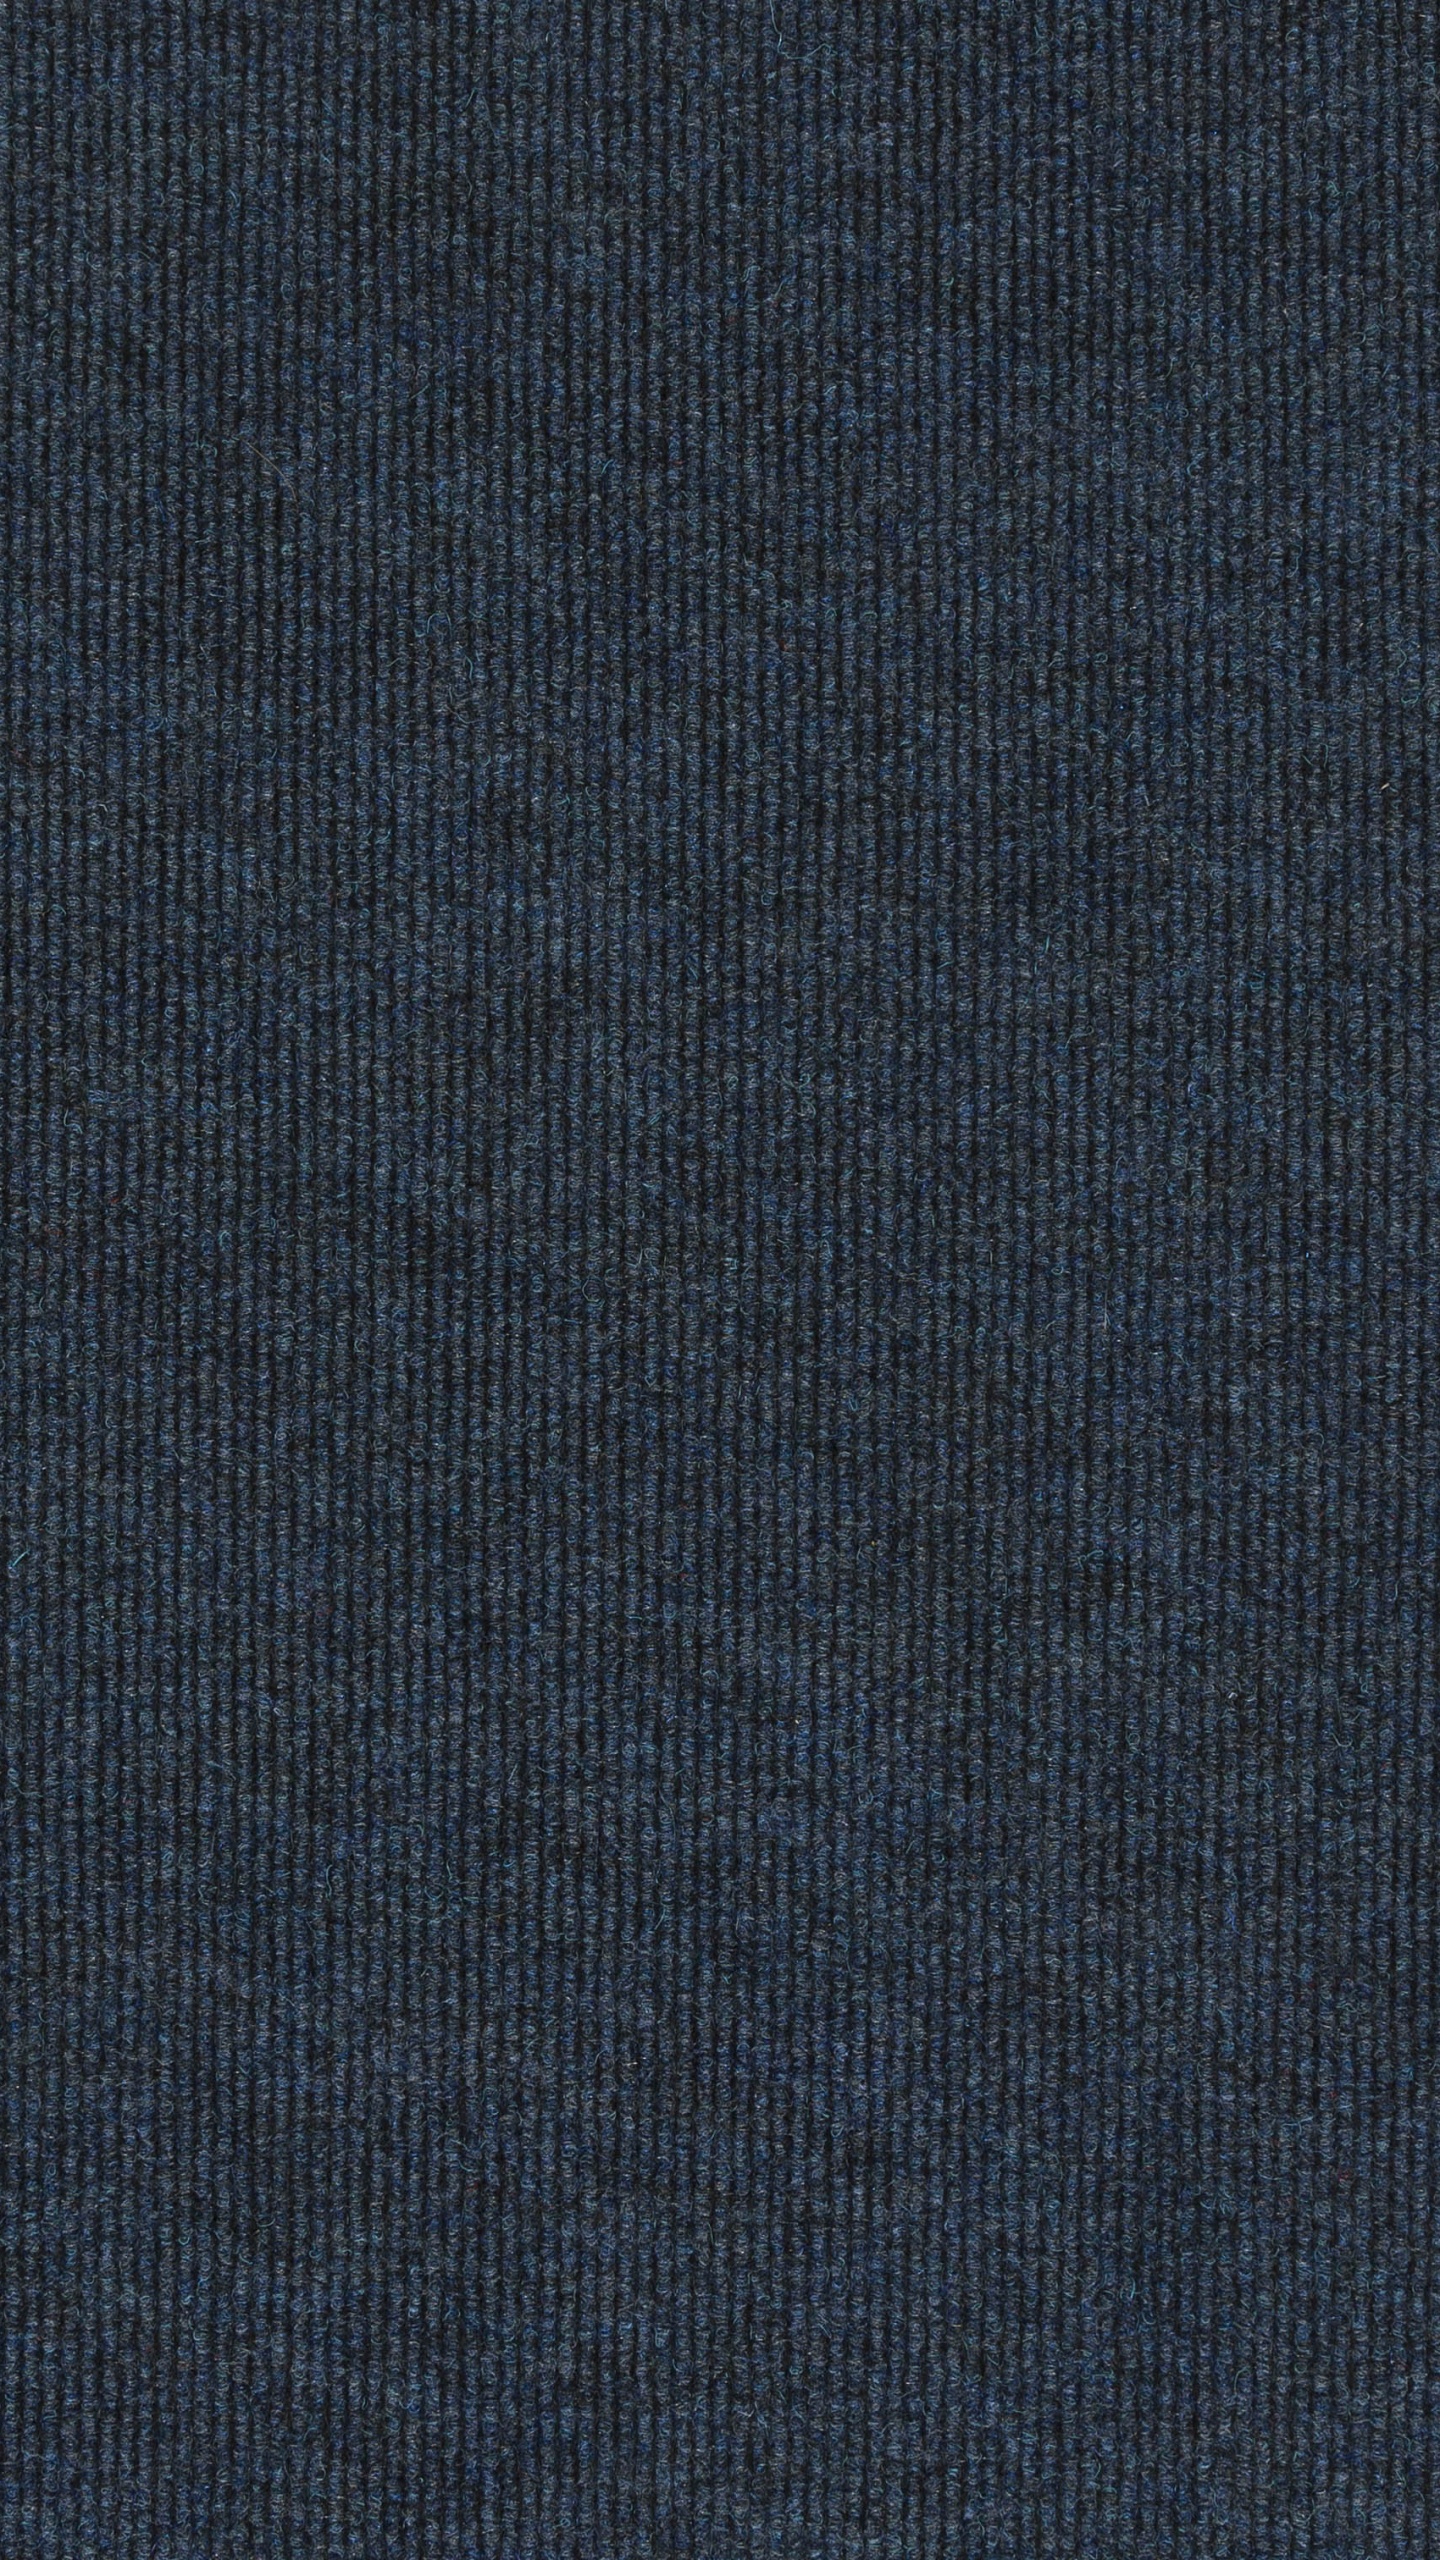 Textil Azul Con Fondo Negro. Wallpaper in 1440x2560 Resolution